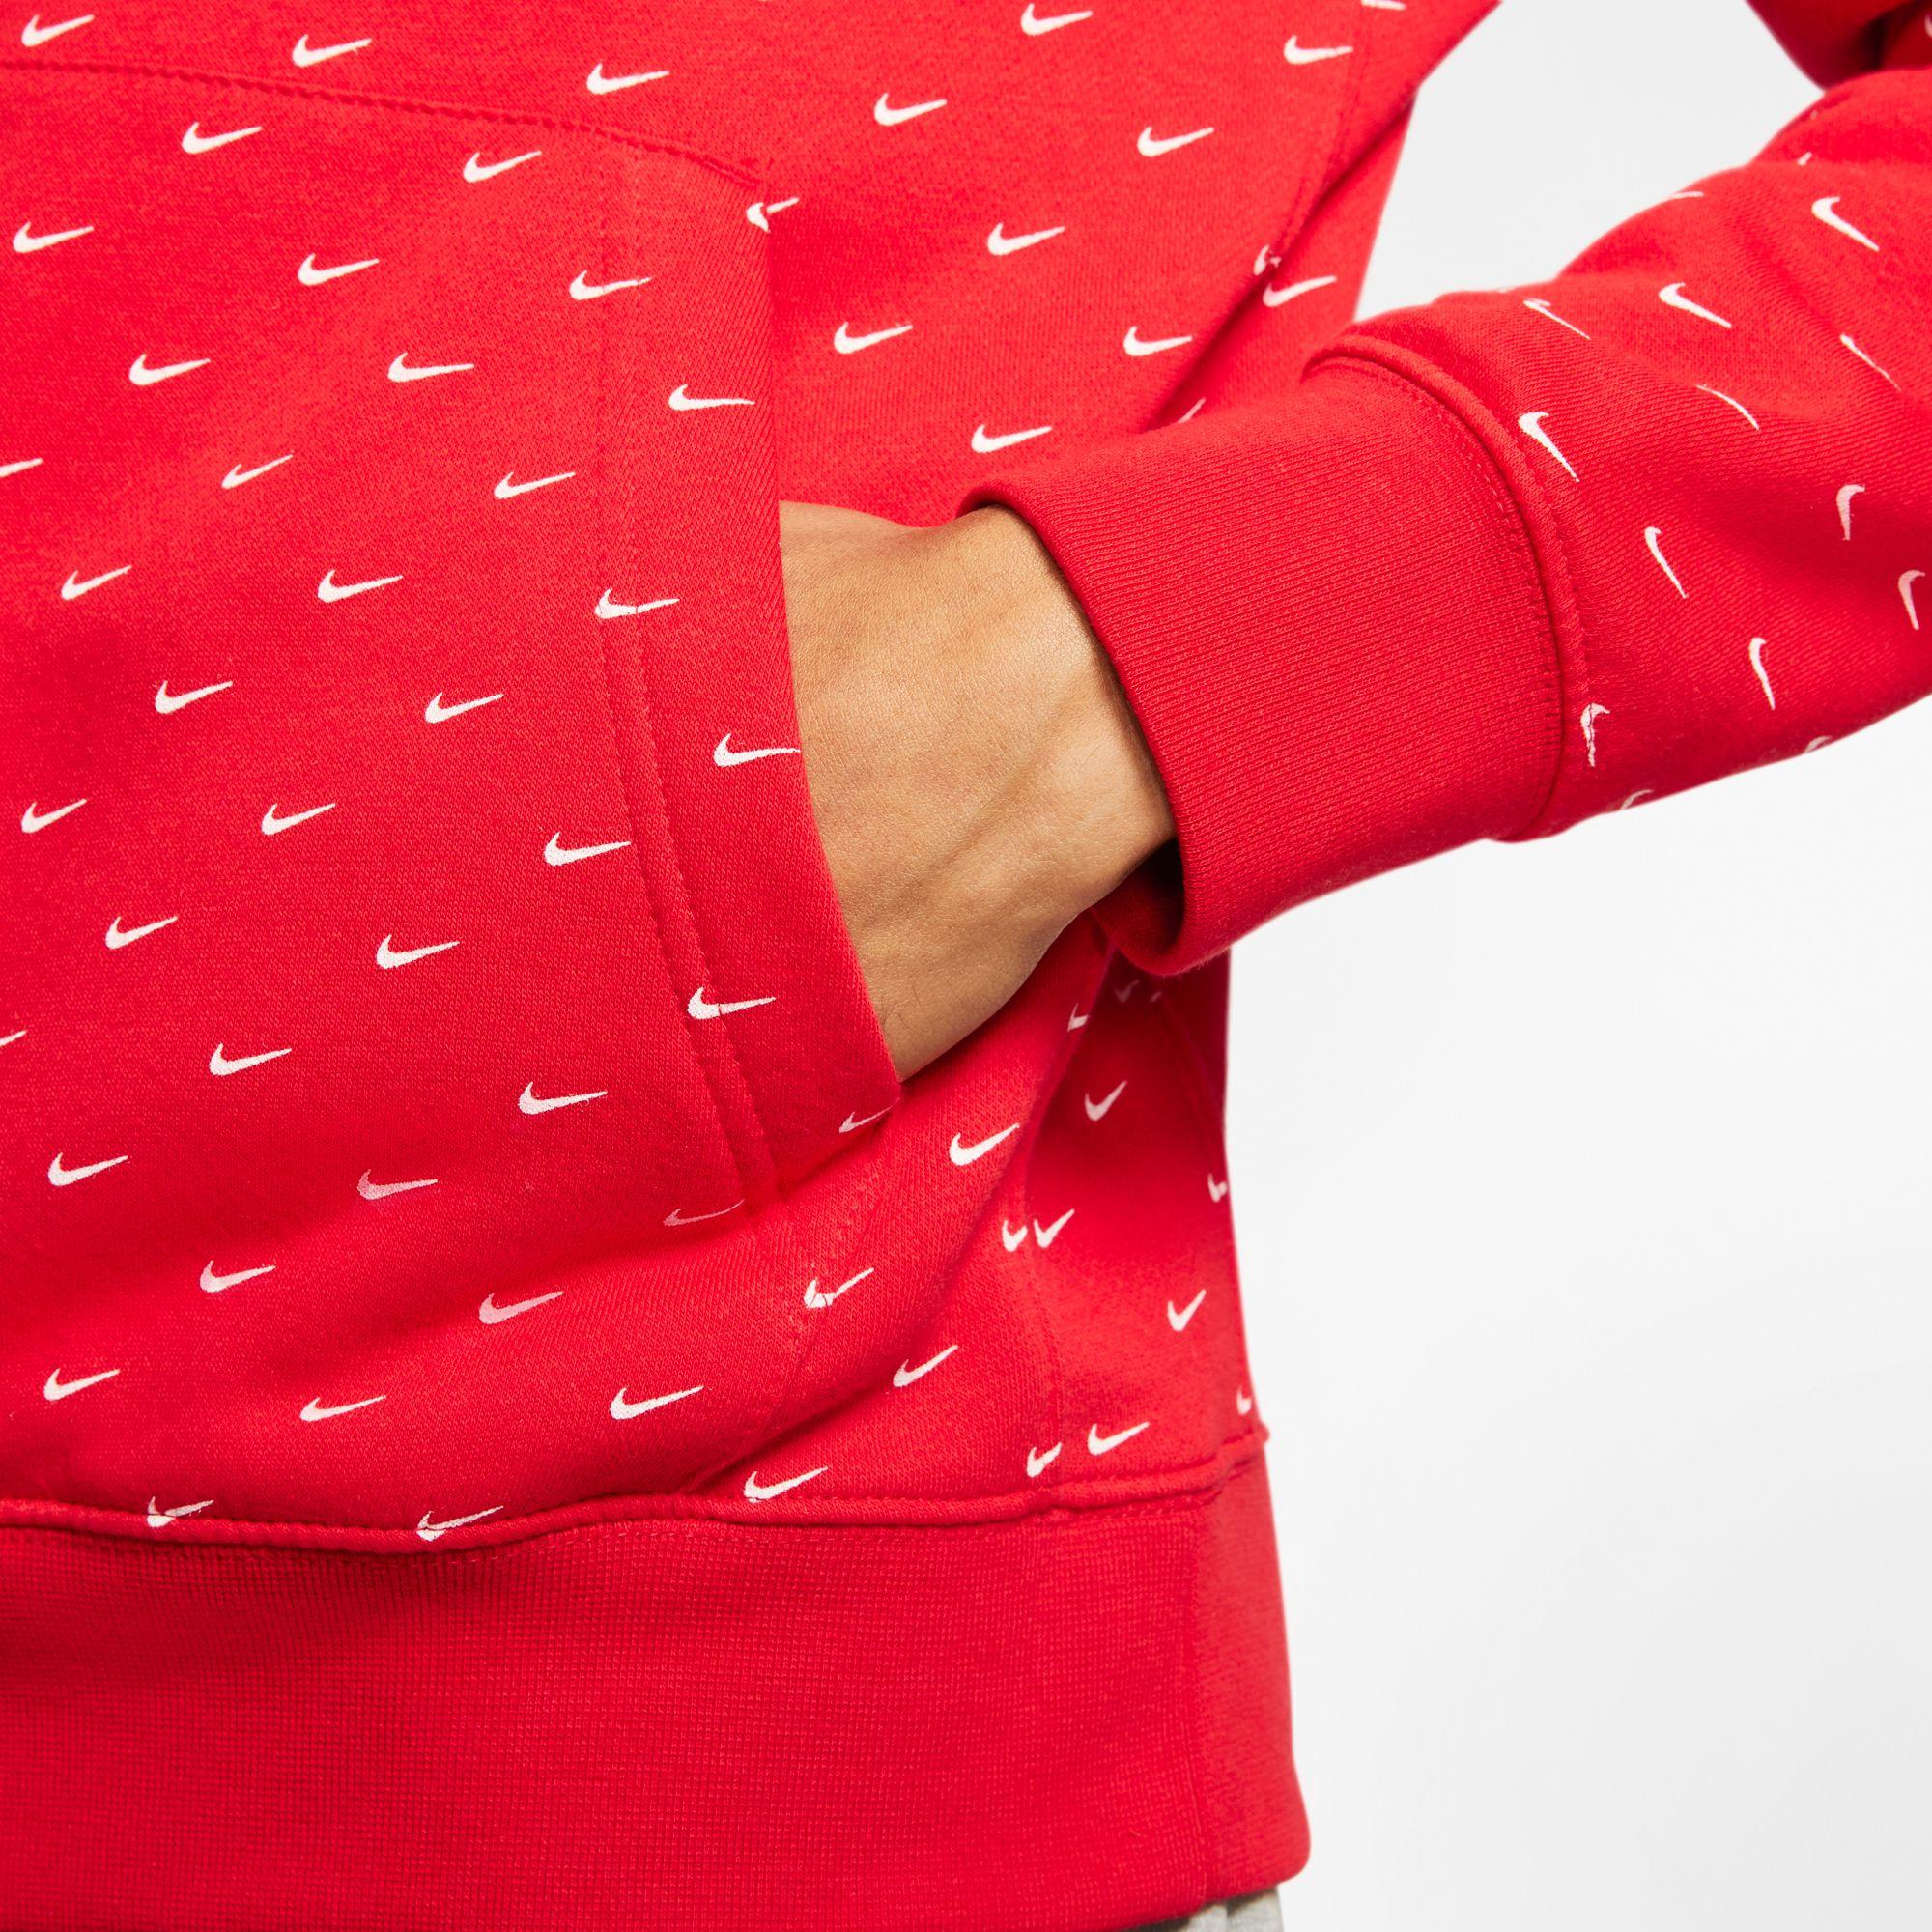 Nike Fleece Sportswear Swoosh Pullover Hoodie in University Red/White (Red)  for Men - Lyst